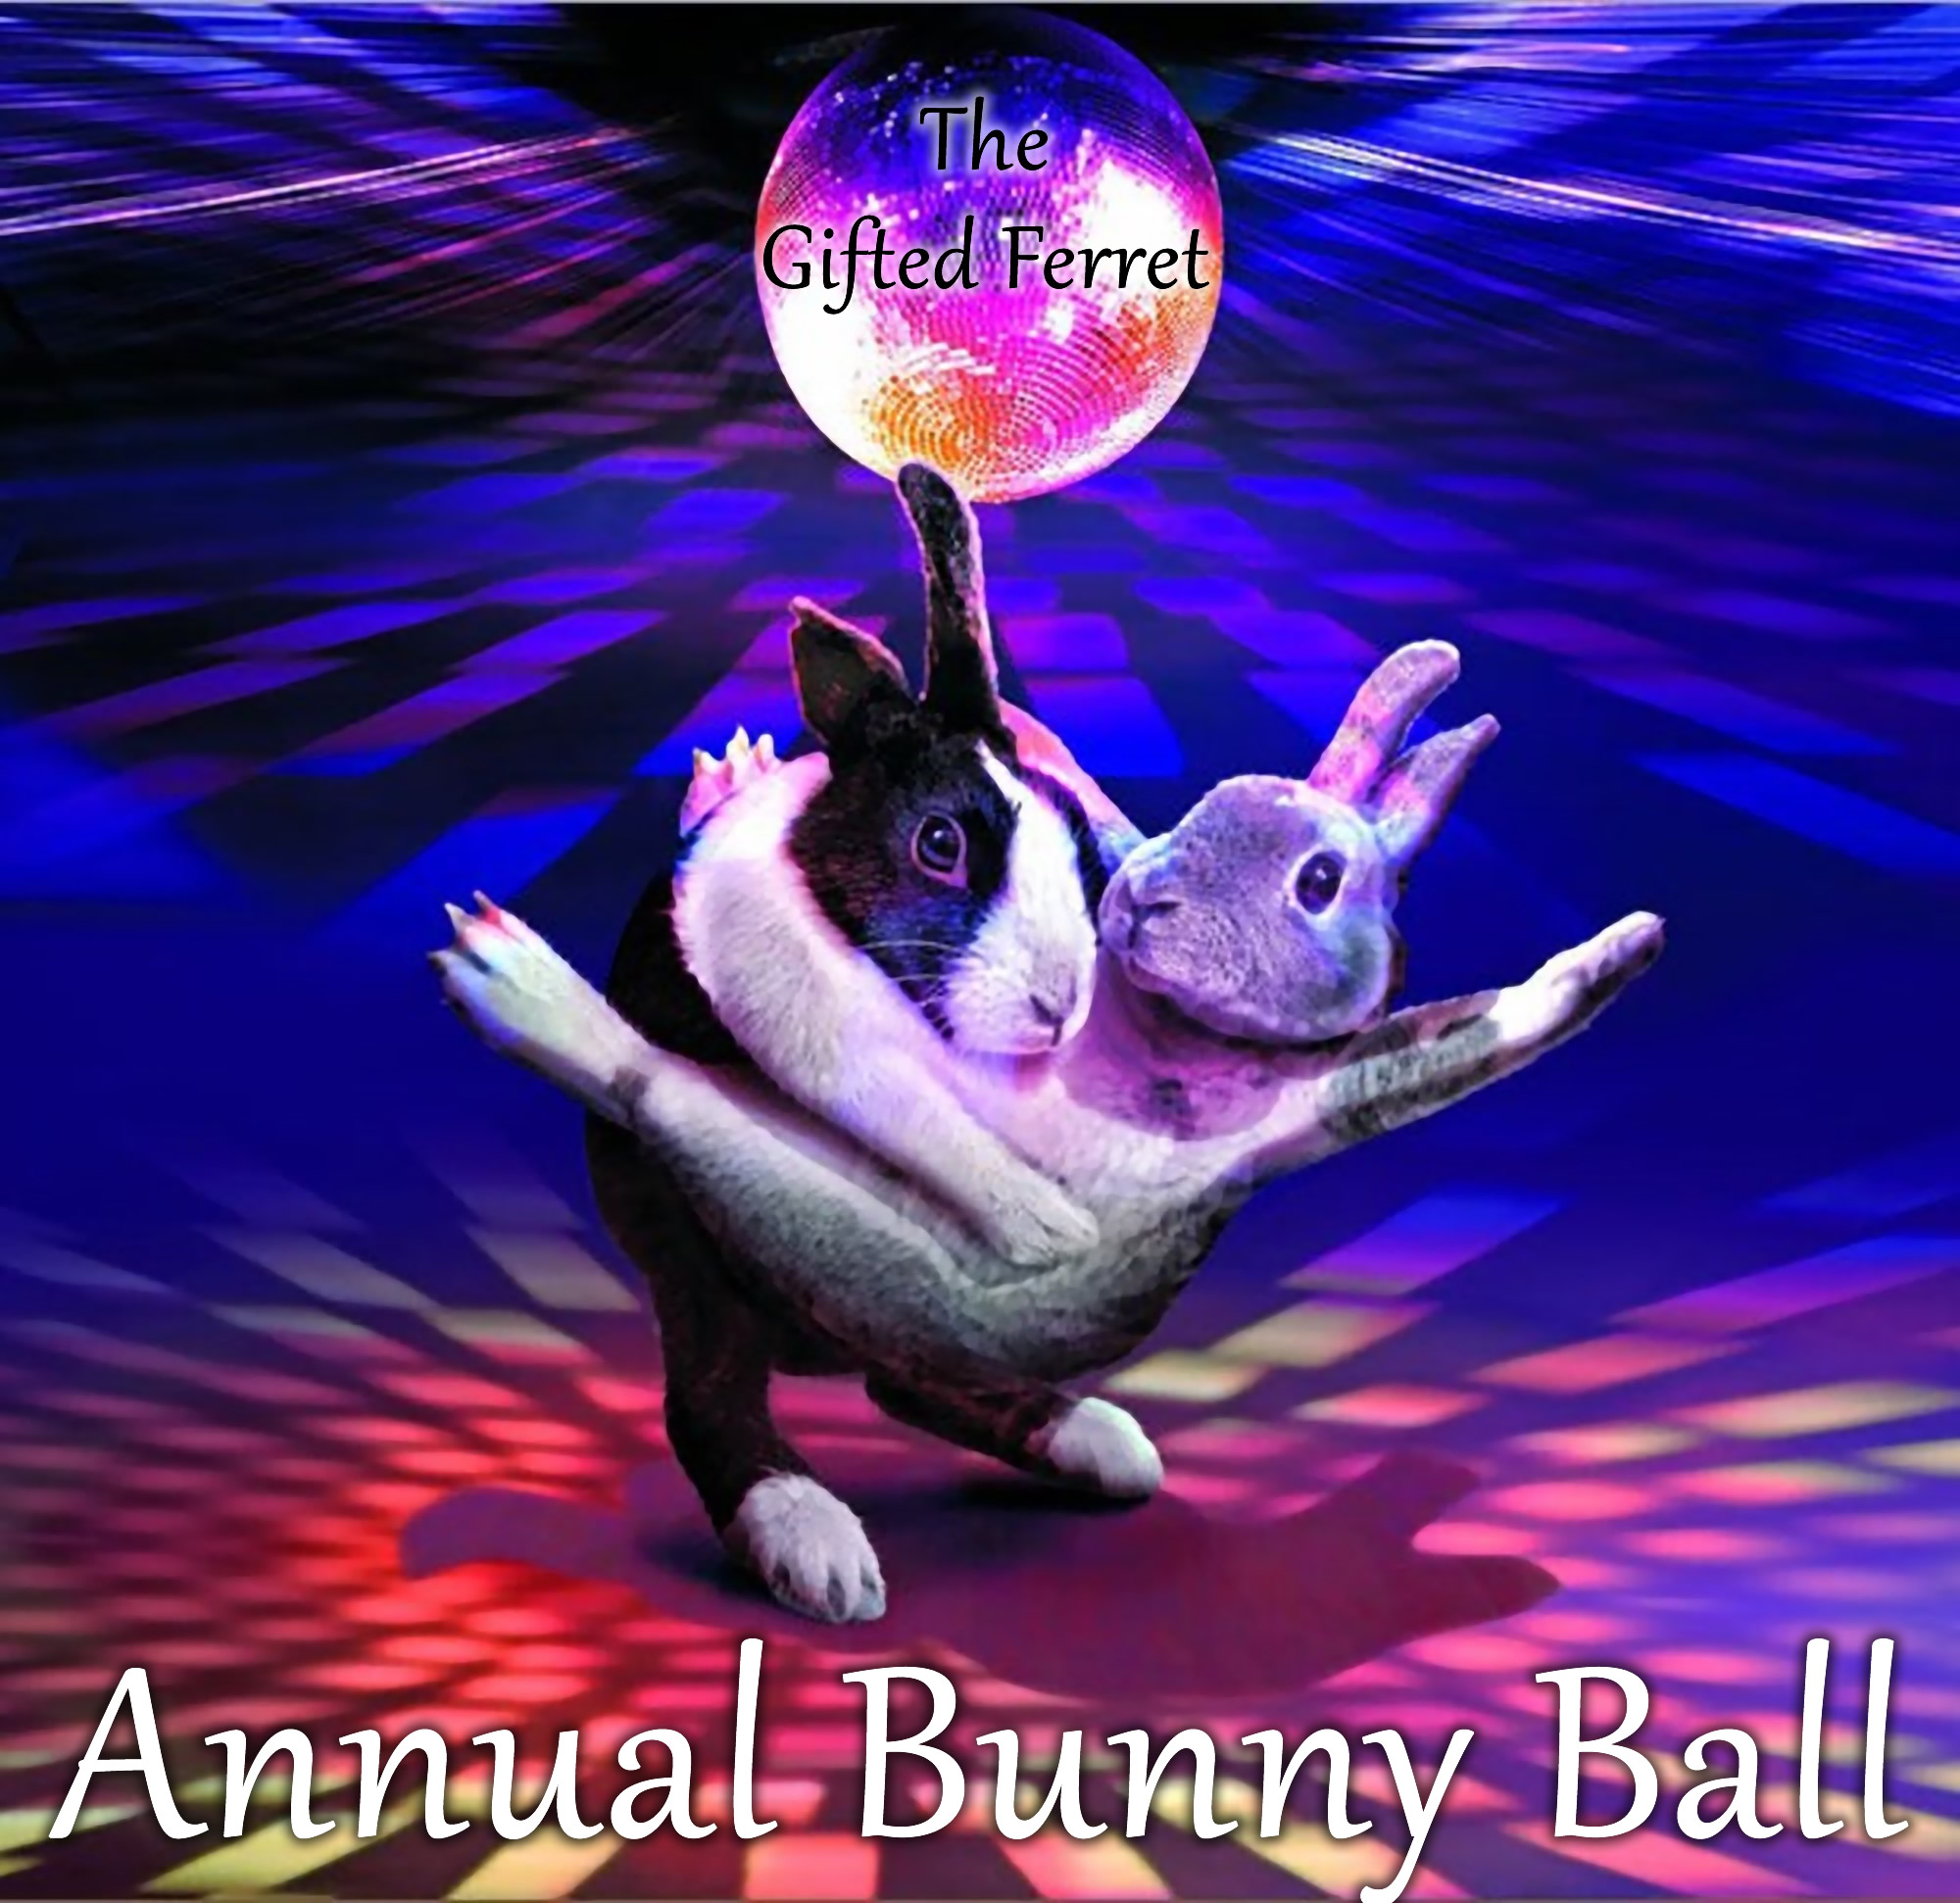 Annual Bunny Ball